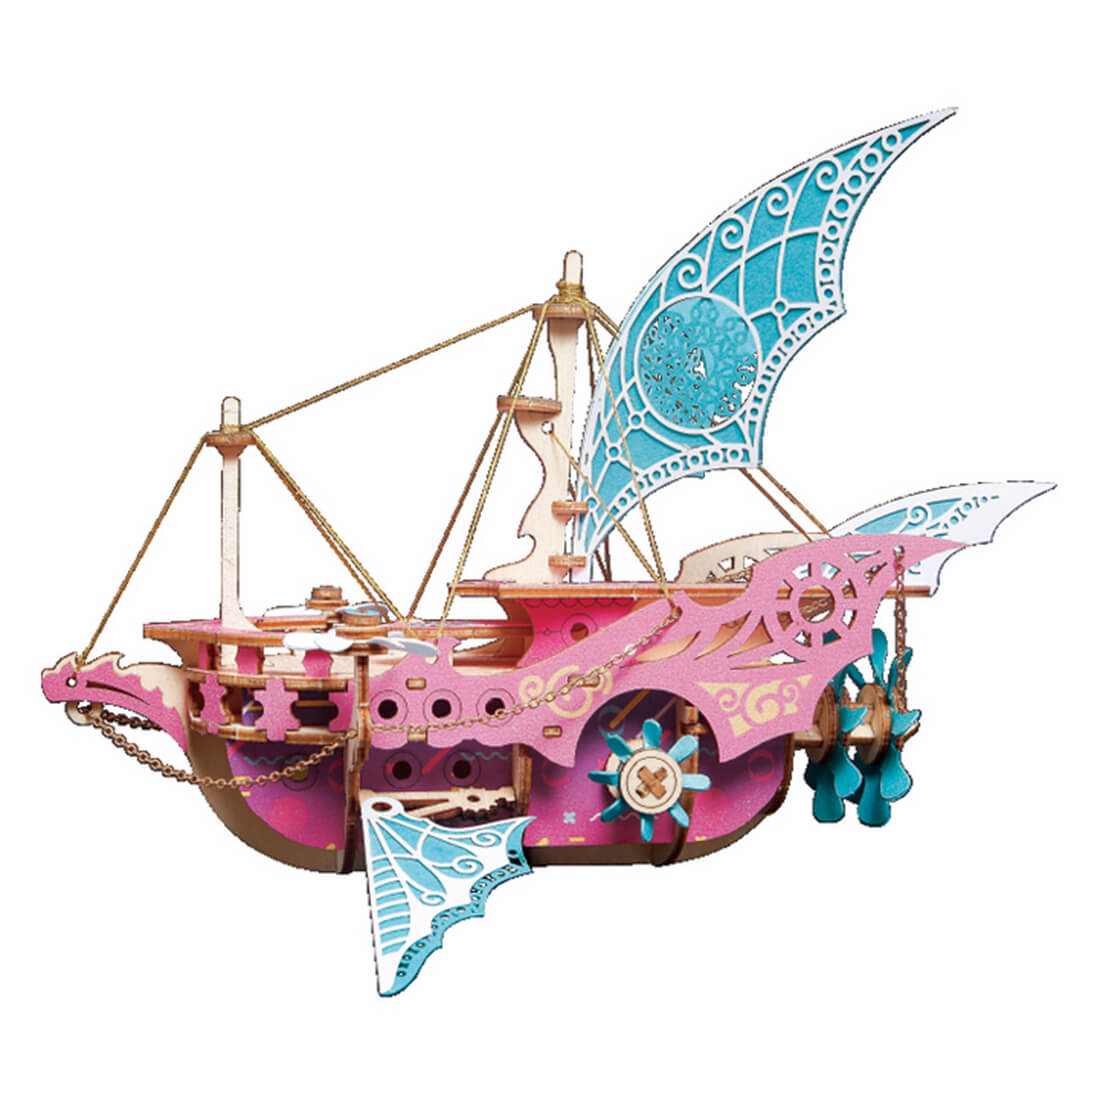 DIY Fantasy Arabian Spaceship 3D Wooden Steampunk Toy Model